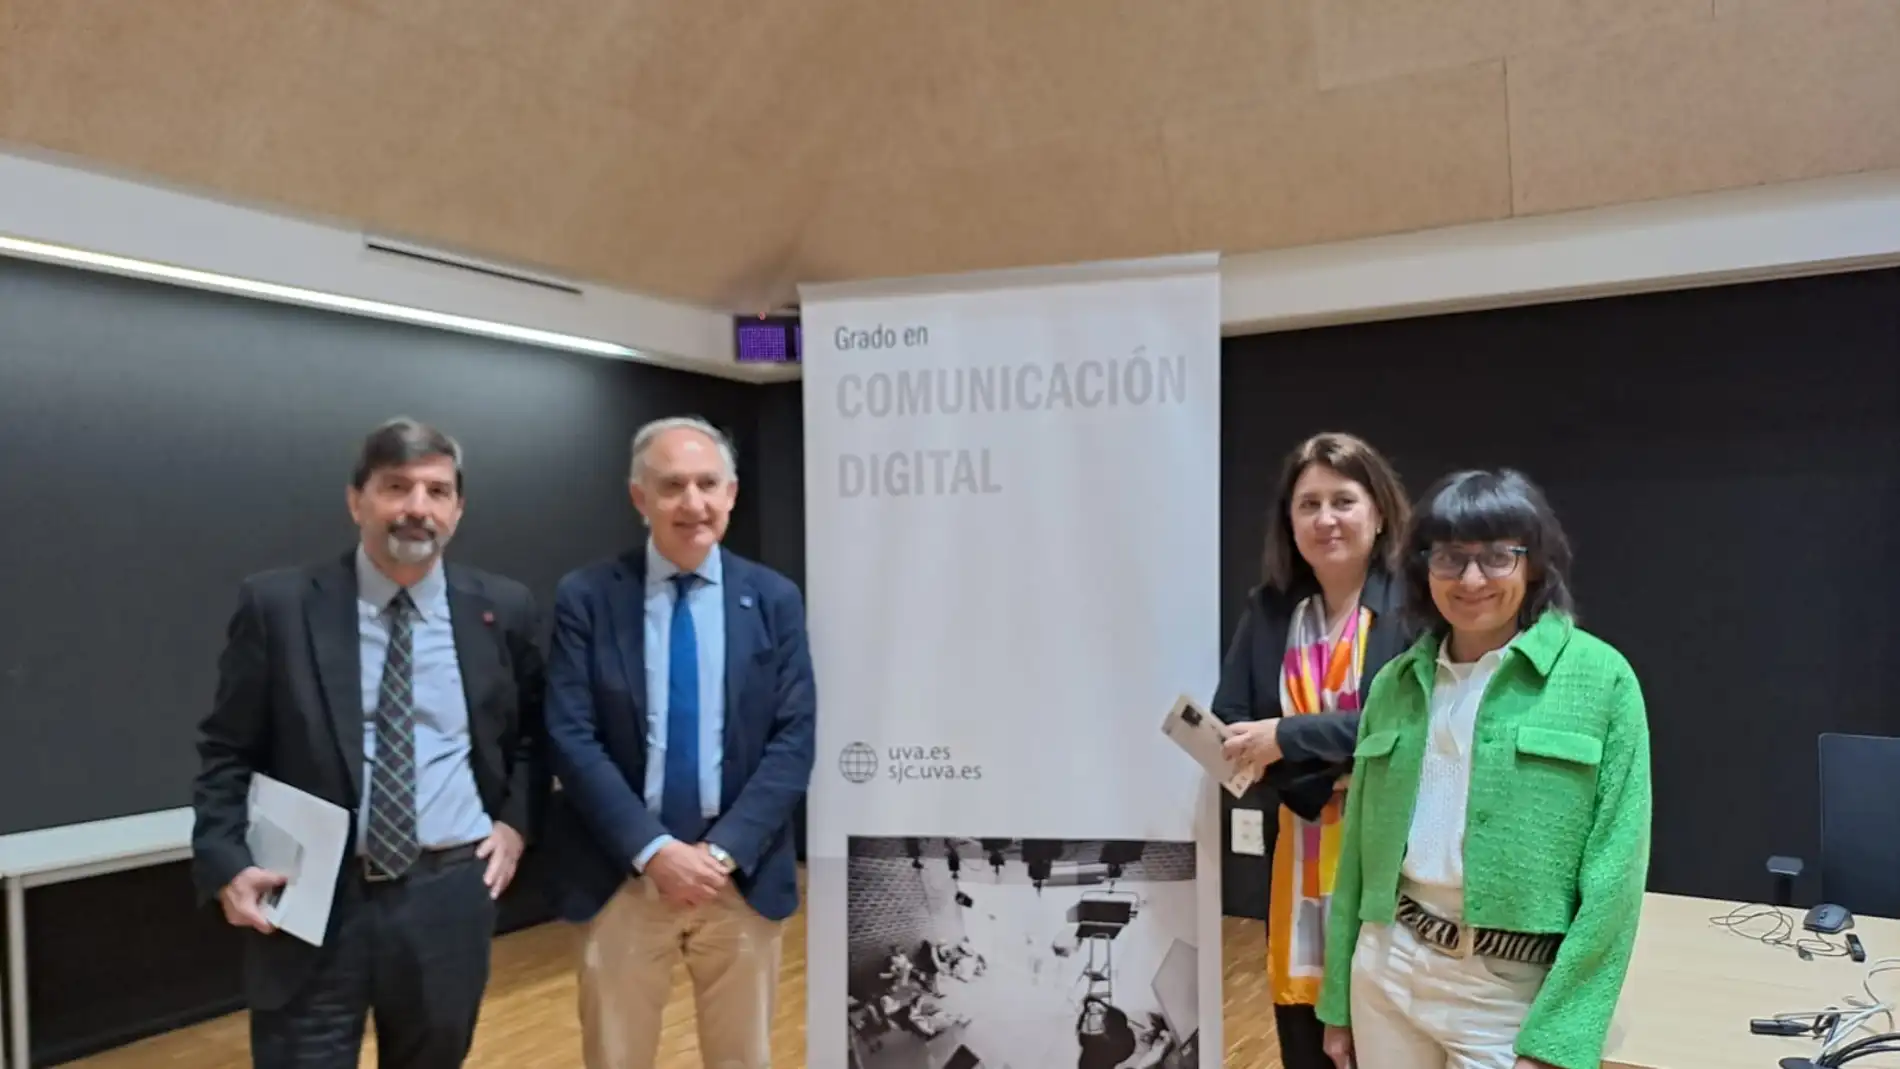 El Campus de la UVa en Segovia impartirá el grado en Comunicación Digital a partir del próximo curso